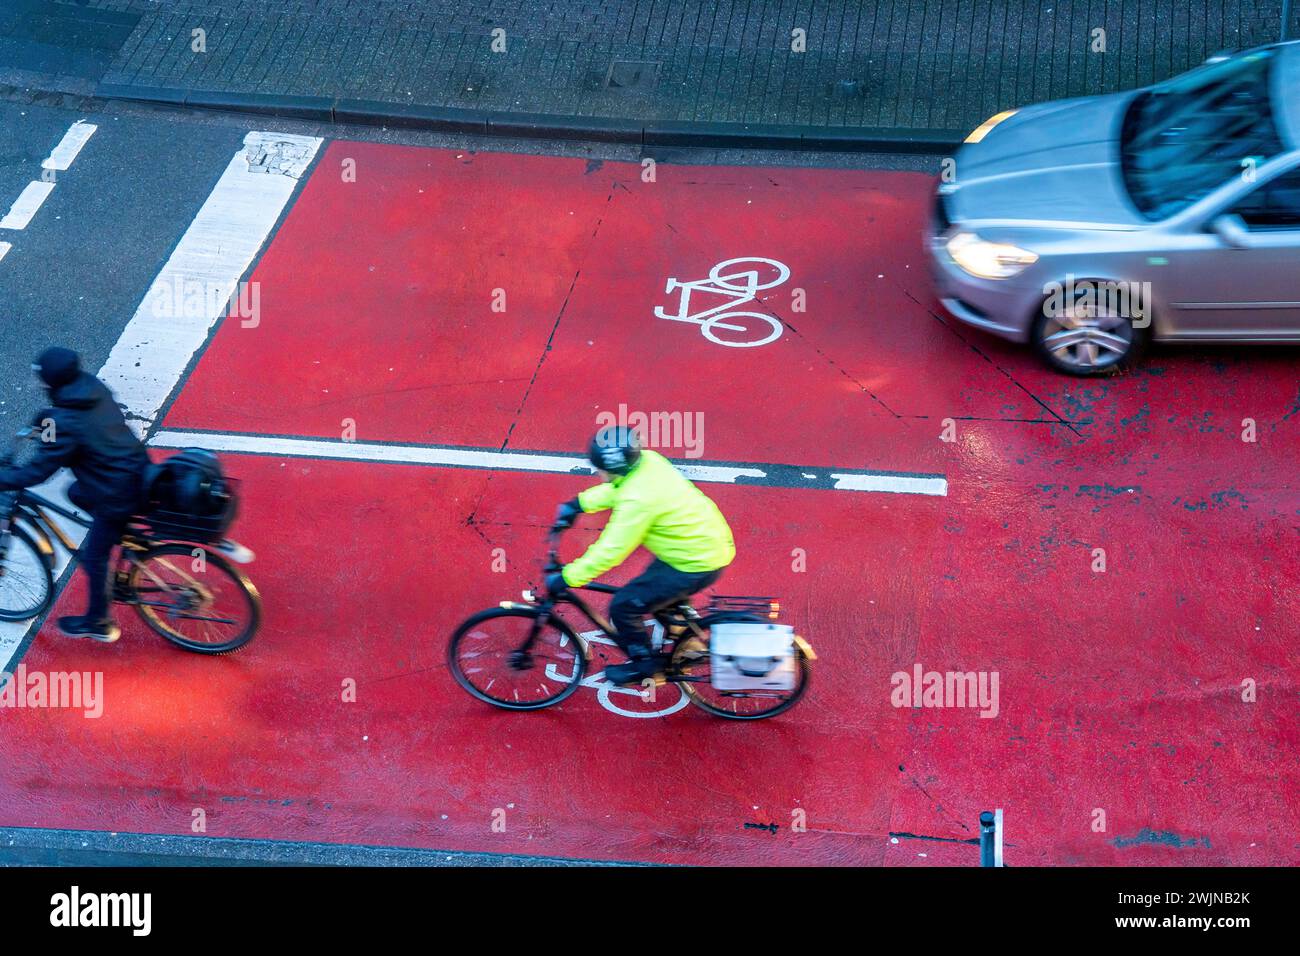 Pista ciclabile, spazio per i ciclisti a un incrocio a semaforo, segnalata in rosso, auto, auto, camion devono fermarsi dietro al semaforo rosso, Münster, NRW, Germania Foto Stock